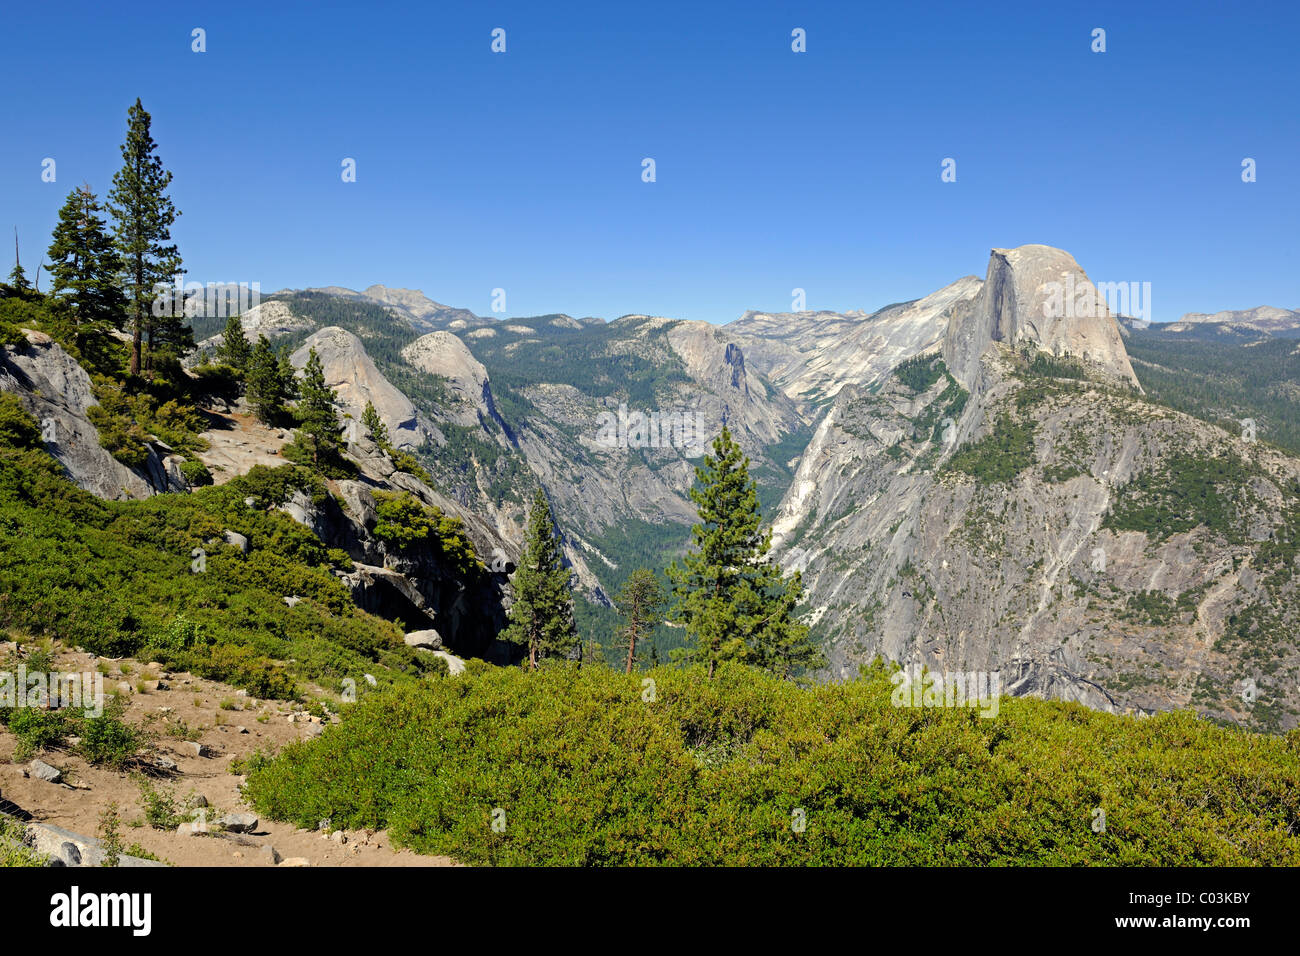 Demi Dôme Mountain vu de Glacier Point, Yosemite National Park, California, USA, Amérique du Nord Banque D'Images